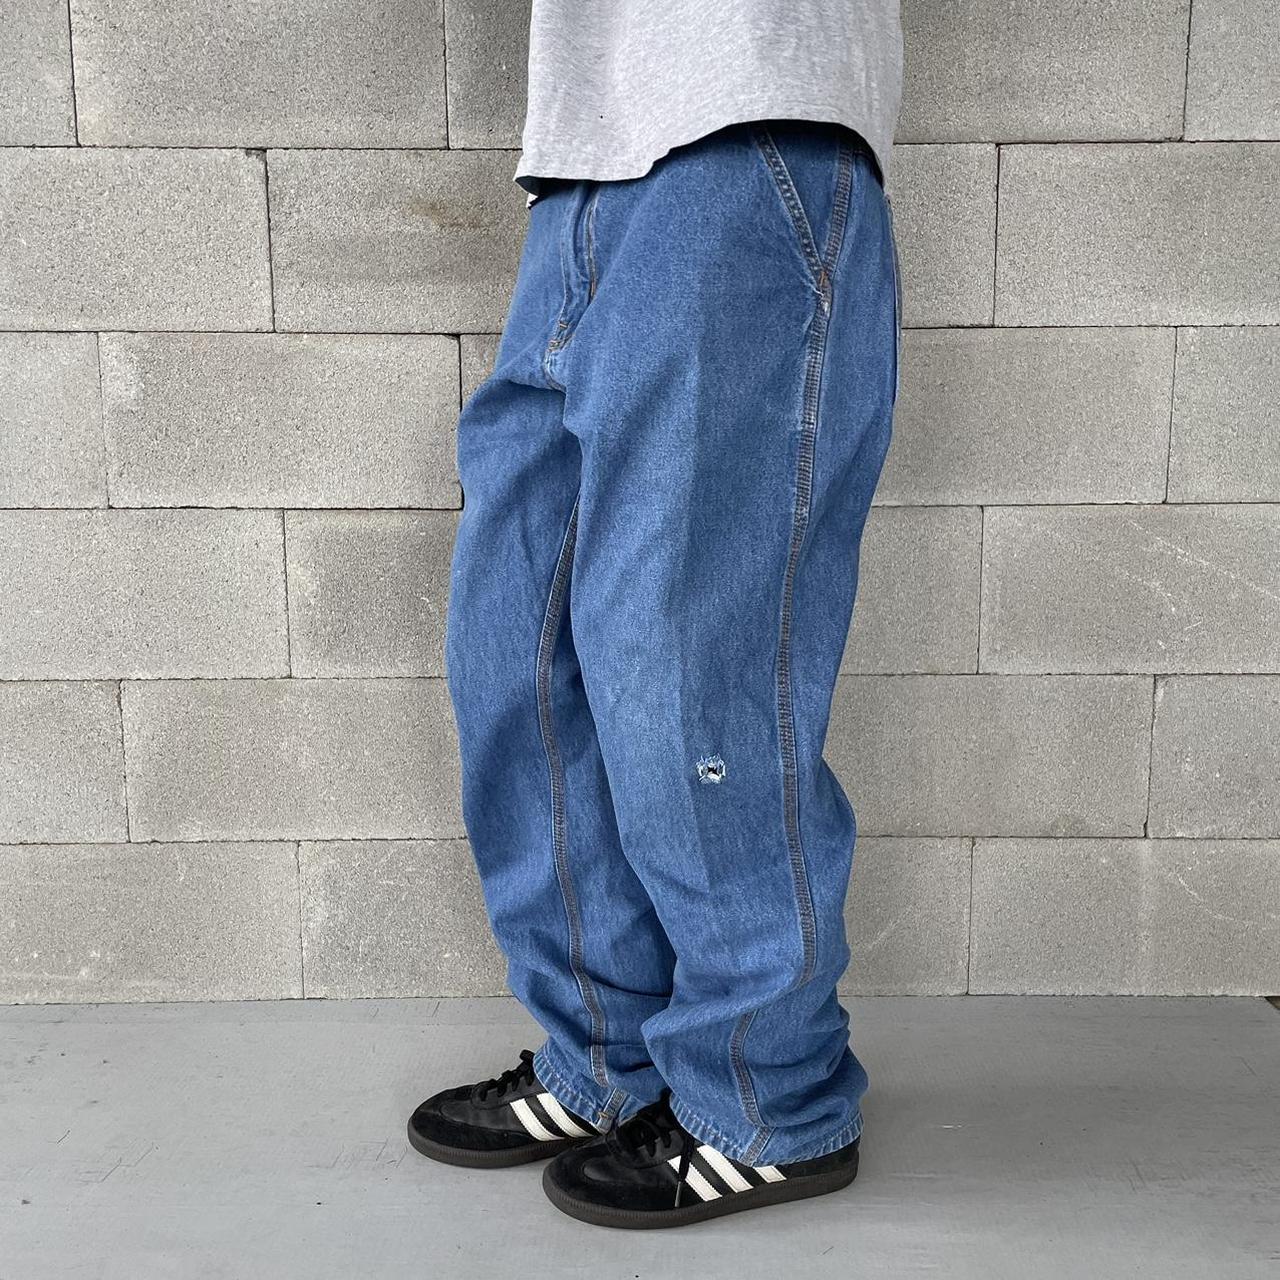 Baggy painter/carpenter jeans Great condition... - Depop